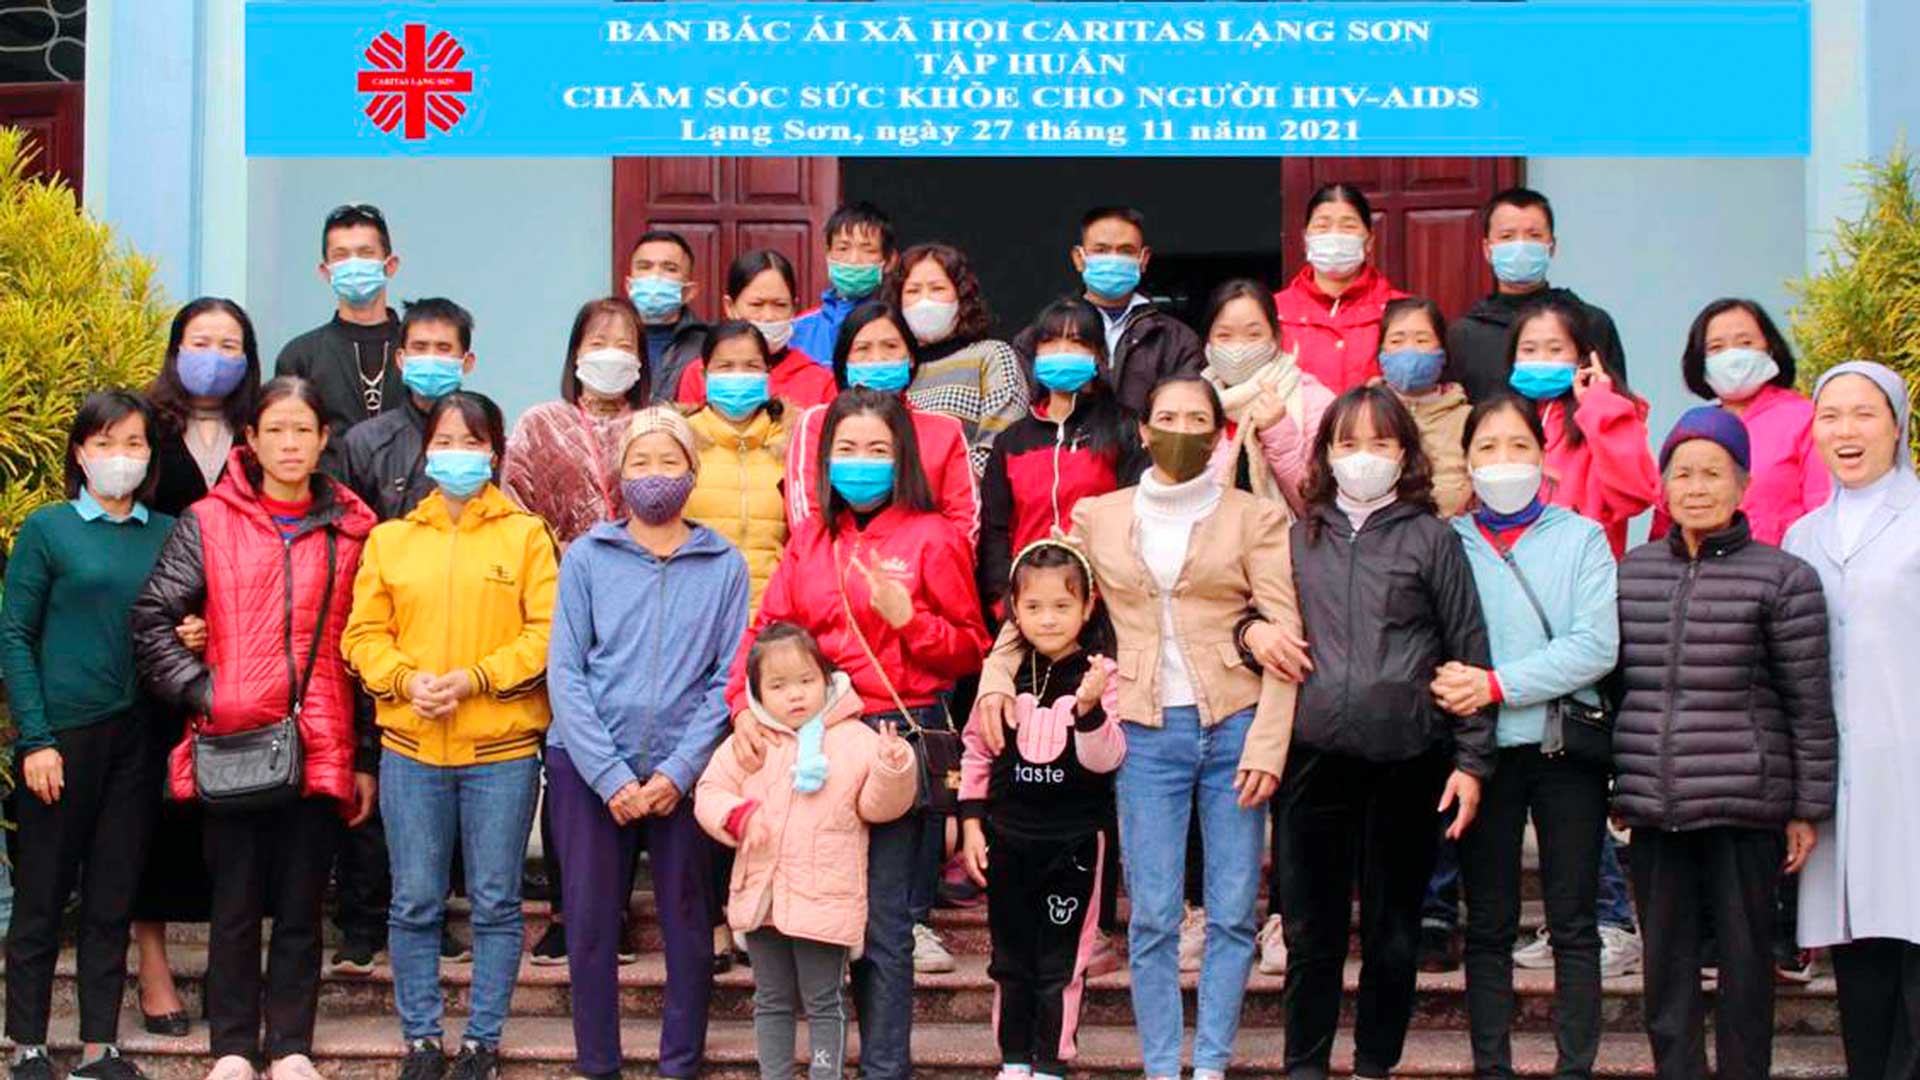 Caritas Lạng Sơn: Tập huấn chăm sóc sức khỏe cho người có HIV